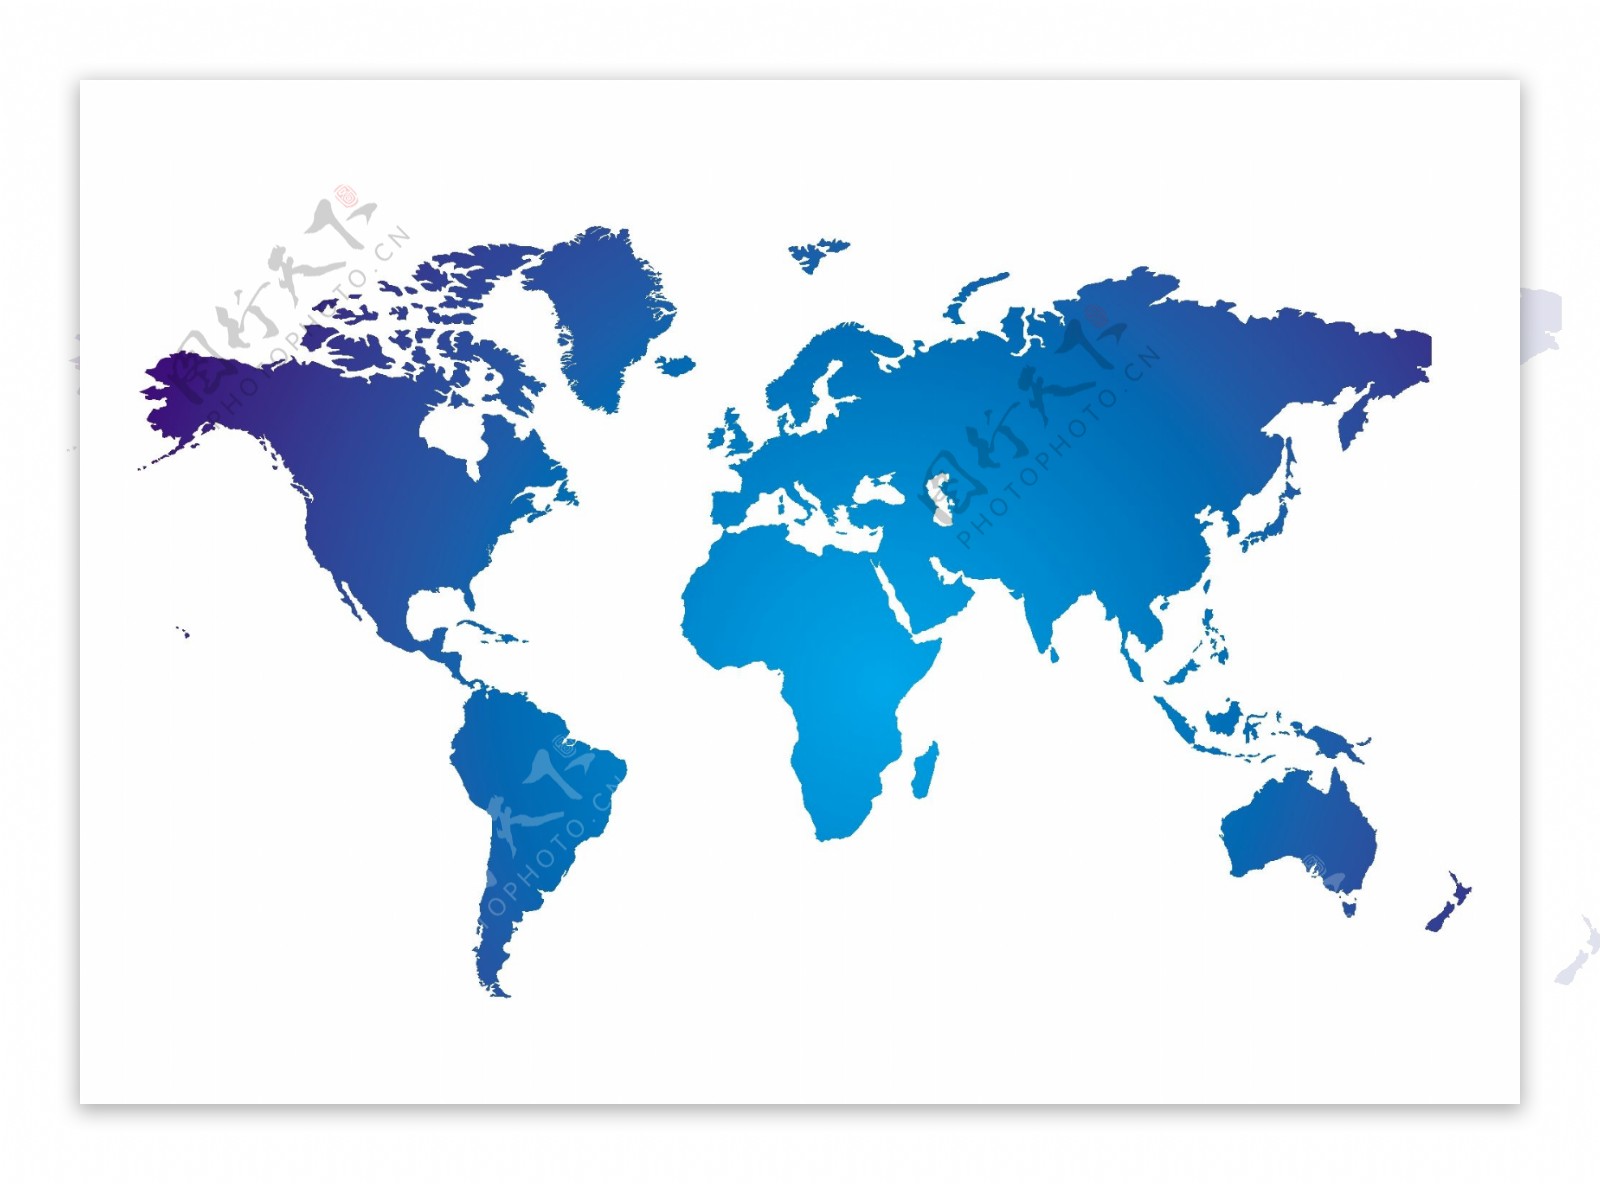 蓝色虚化世界地图矢量素材下载